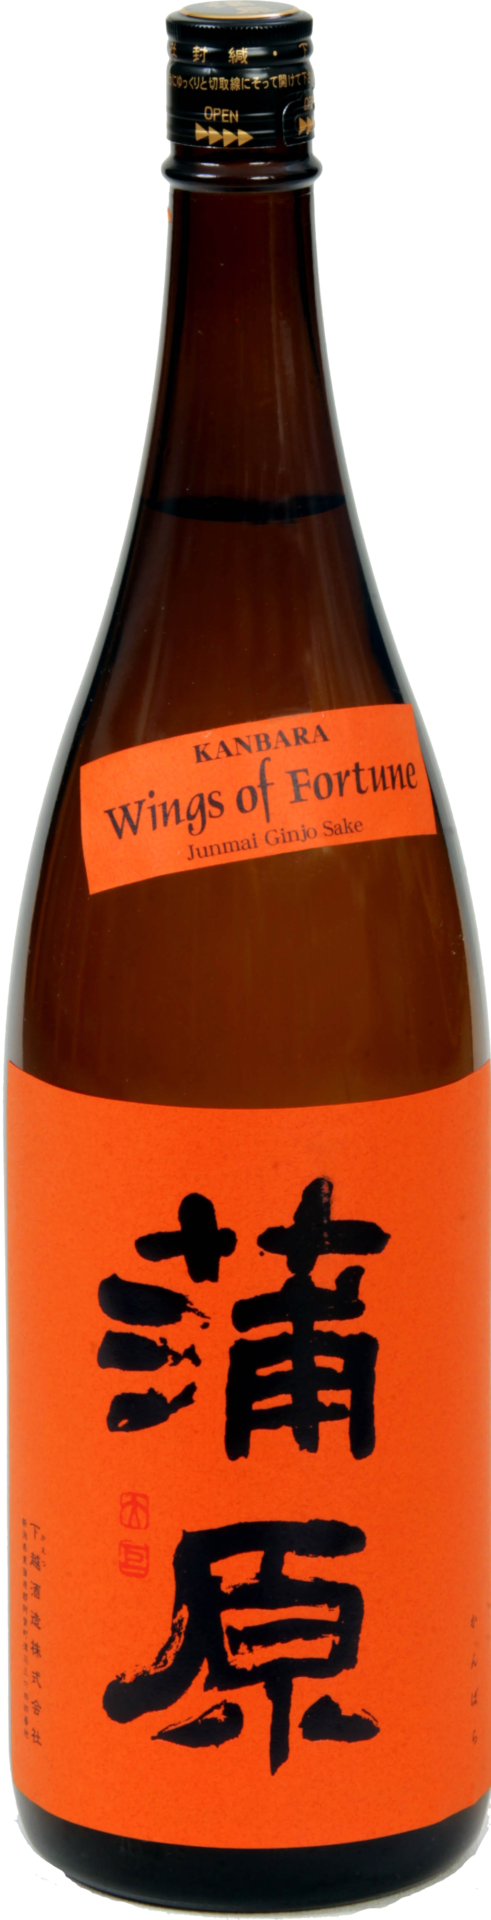 200138 Le Kambara KAMBARA « Wings of Fortune » de la maison saké Kaetsu Shuzo